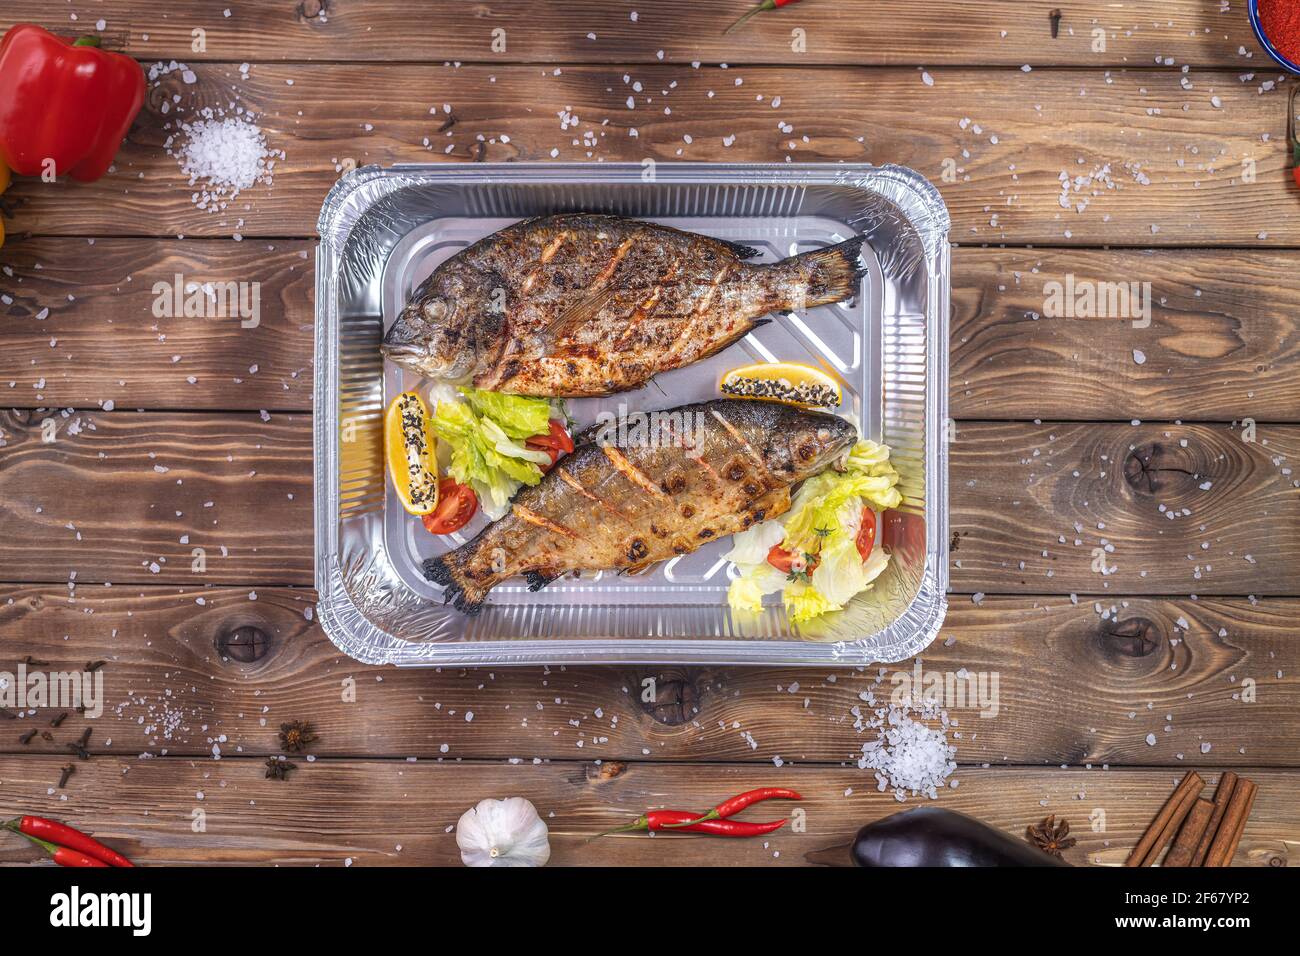 Pesce alla griglia con verdure, peperone, sale grosso, adagiato in un contenitore di alluminio su fondo di legno marrone. Consegna di cibo al ristorante. Foto Stock